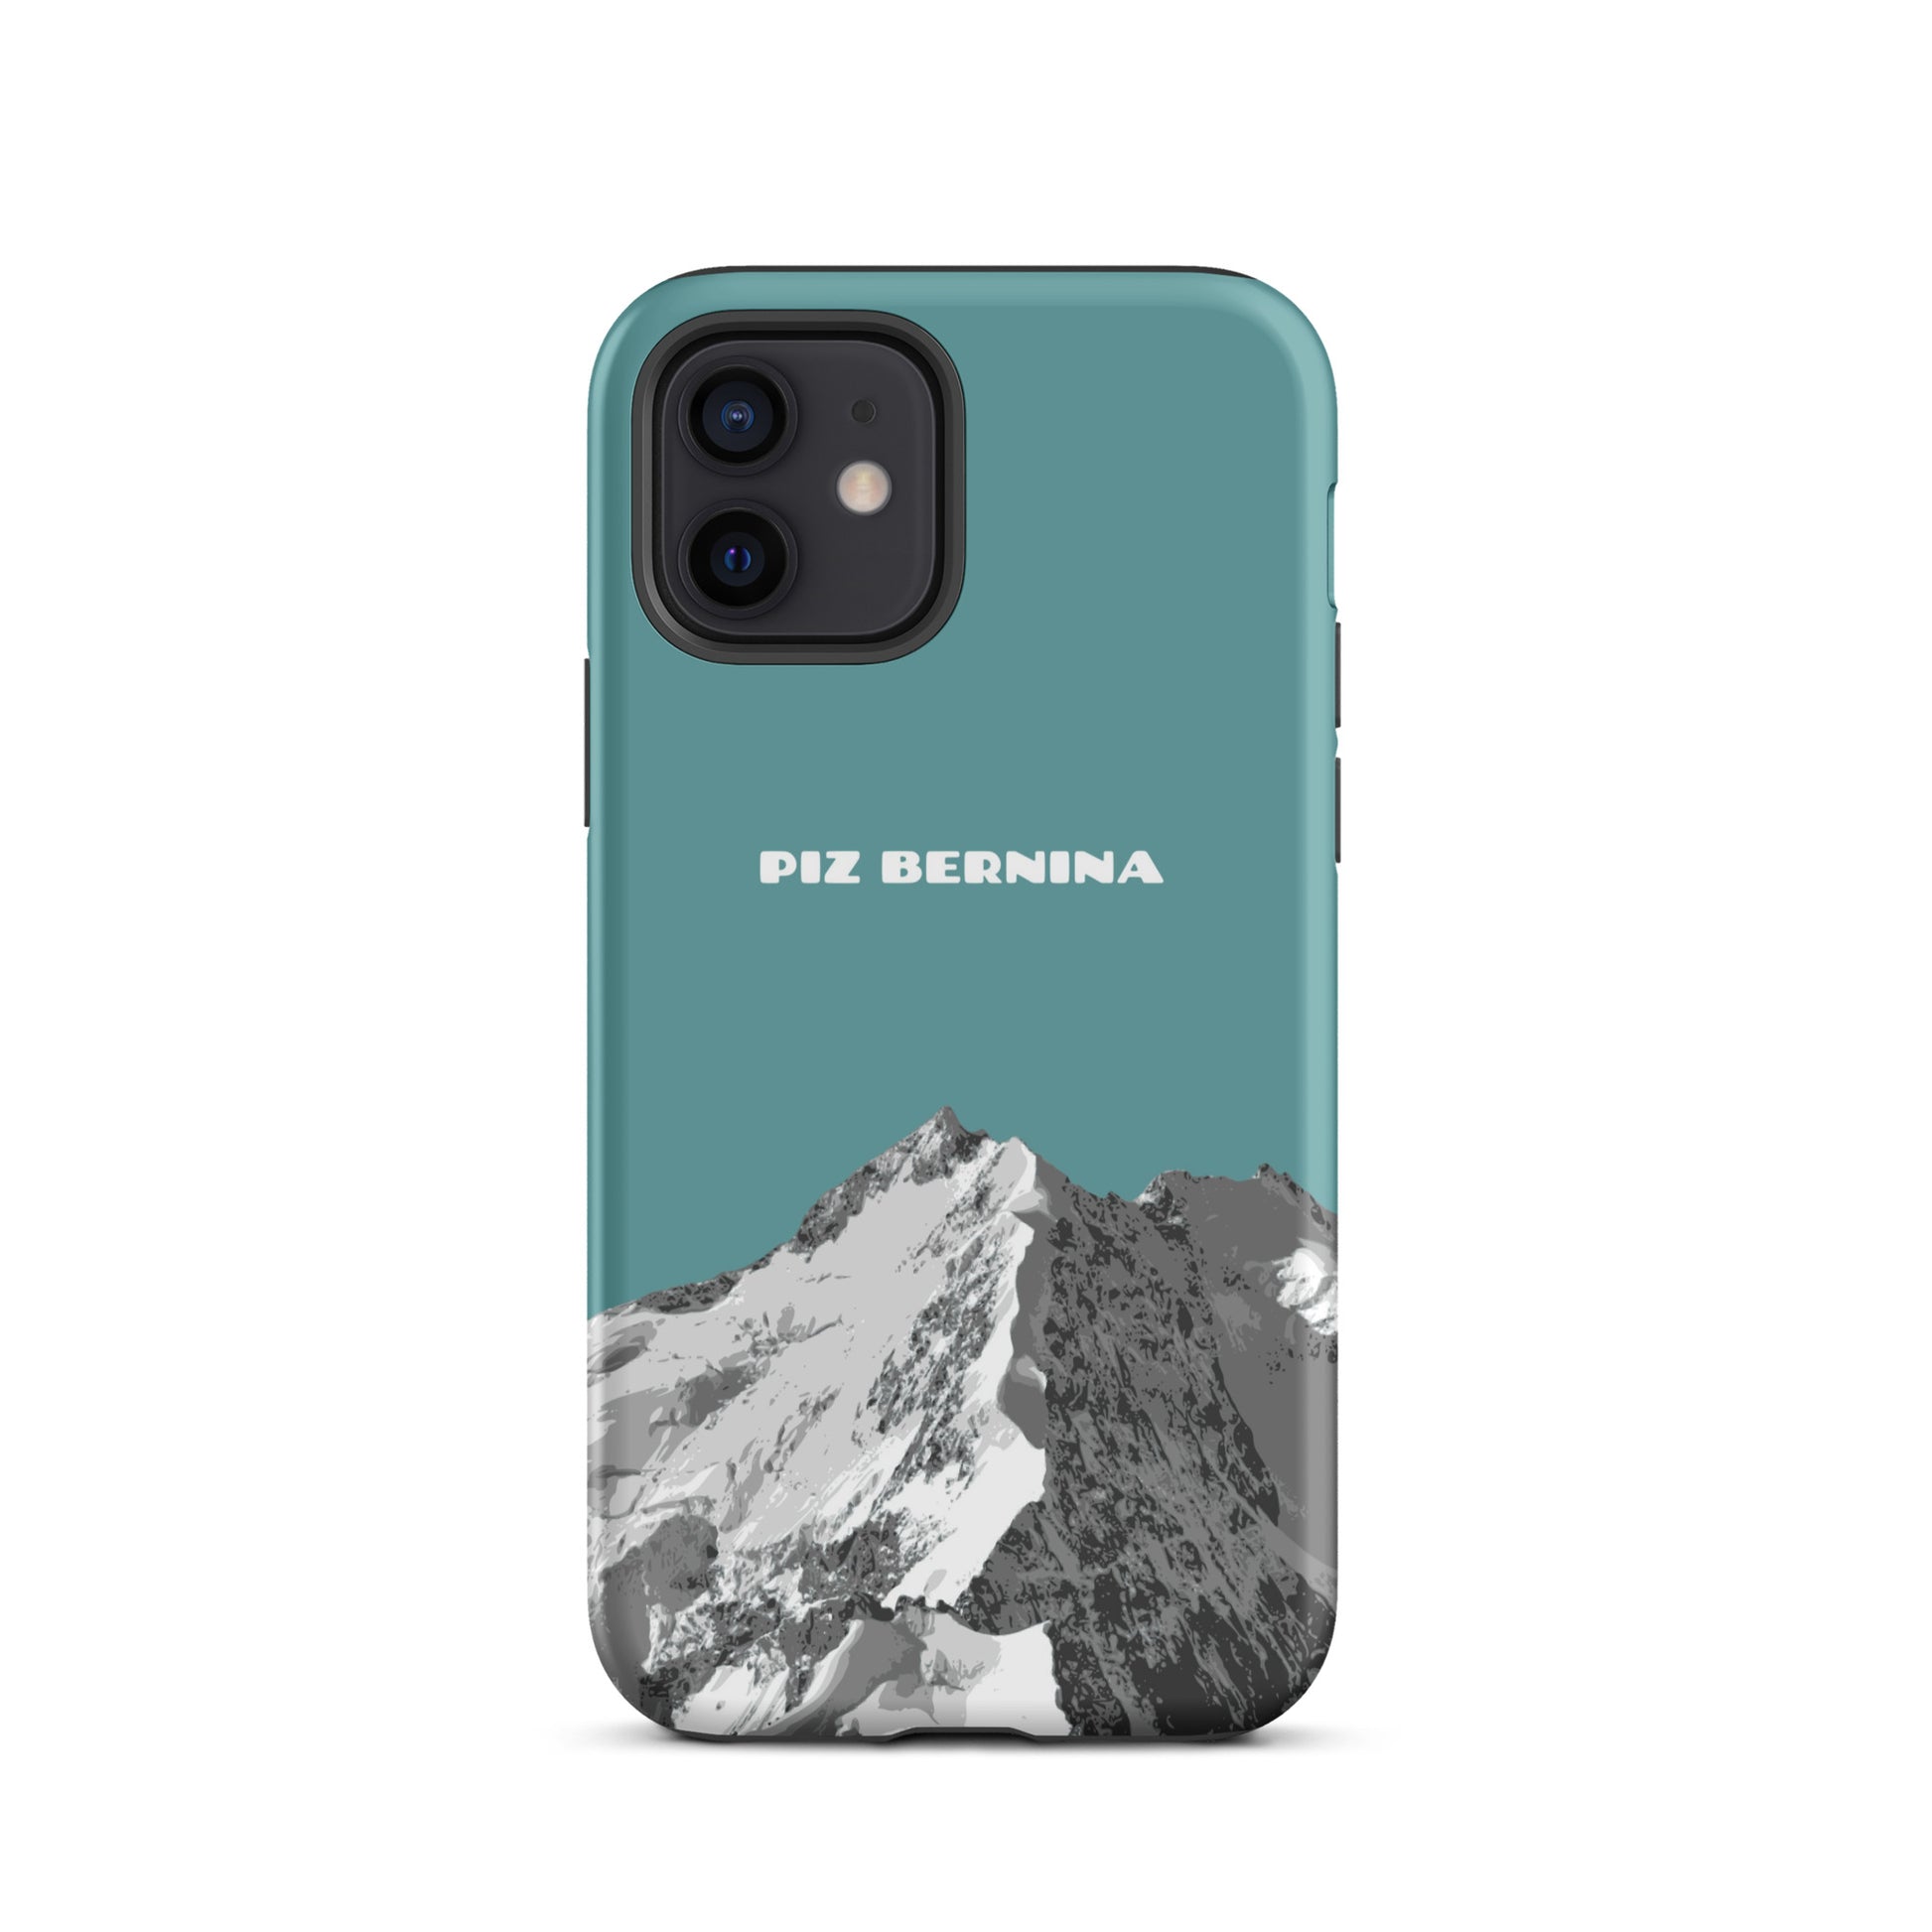 Hülle für das iPhone 12 von Apple in der Farbe Kadettenblau, dass den Piz Bernina in Graubünden zeigt.